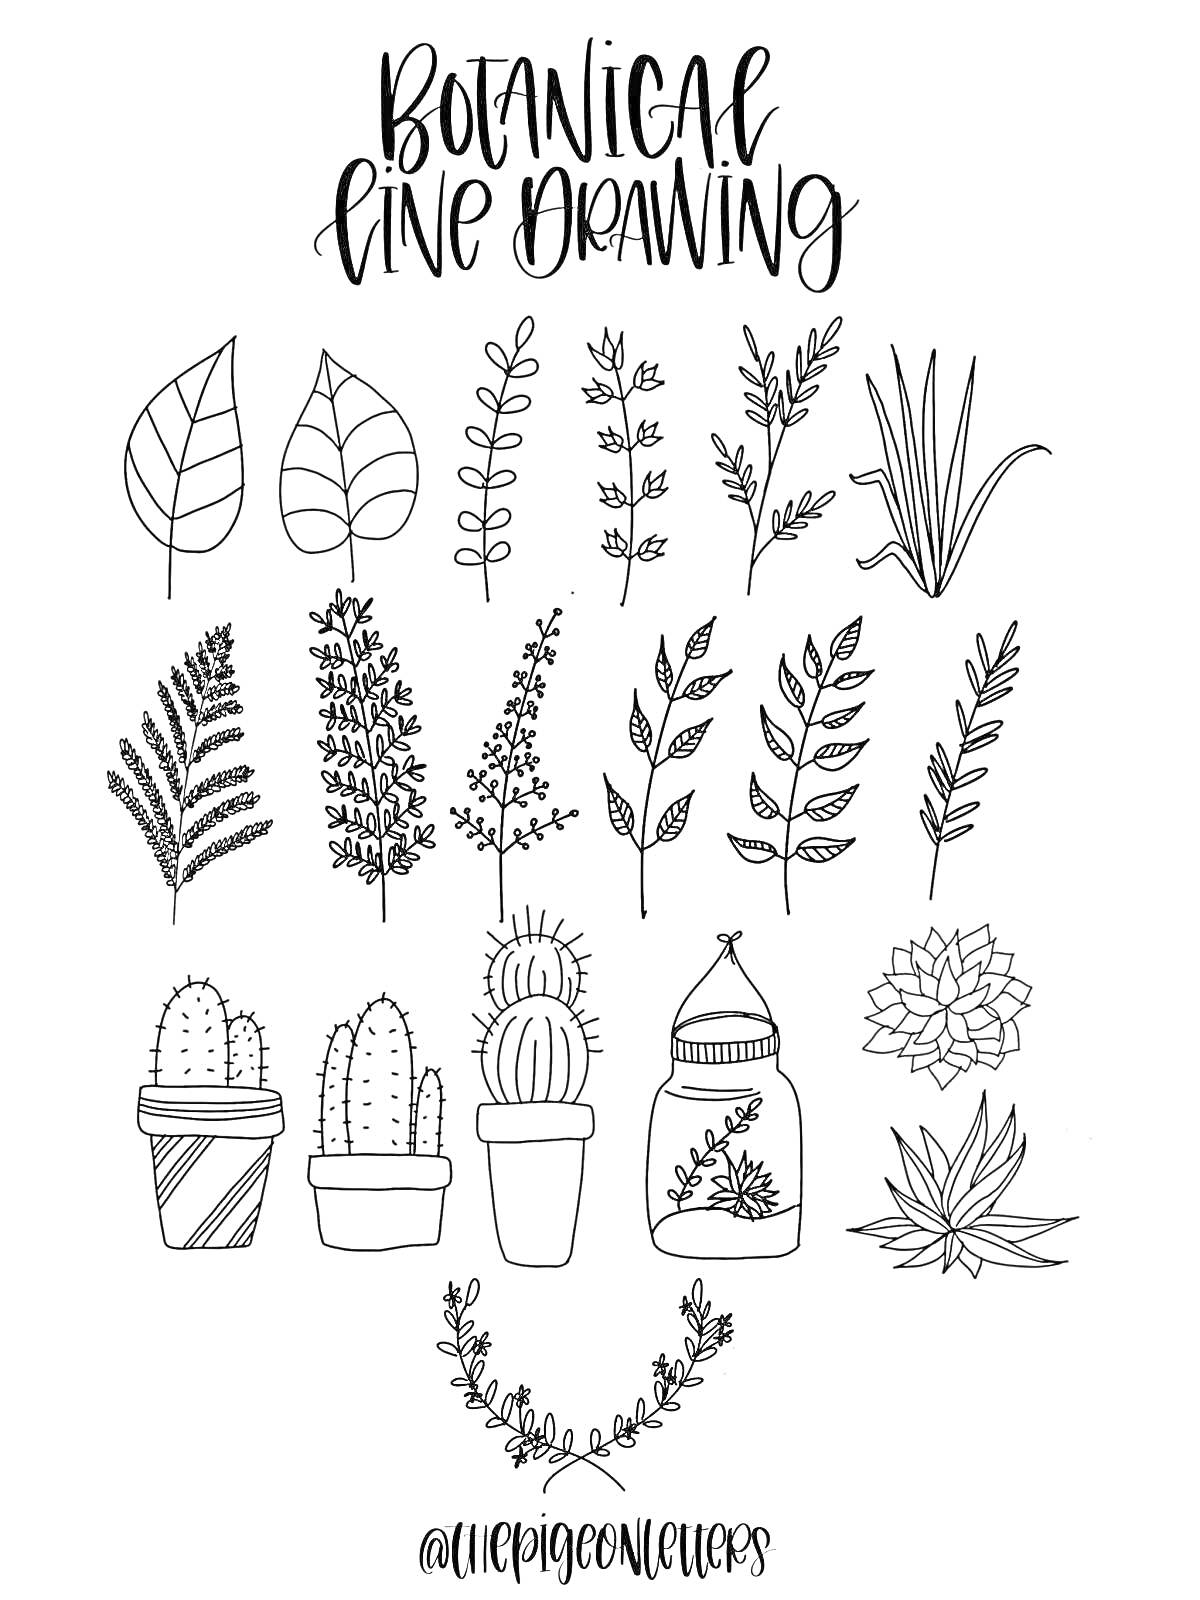 Ботанический рисунок линиями: листья, растения, кактусы, суккуленты в горшках и бутылочке